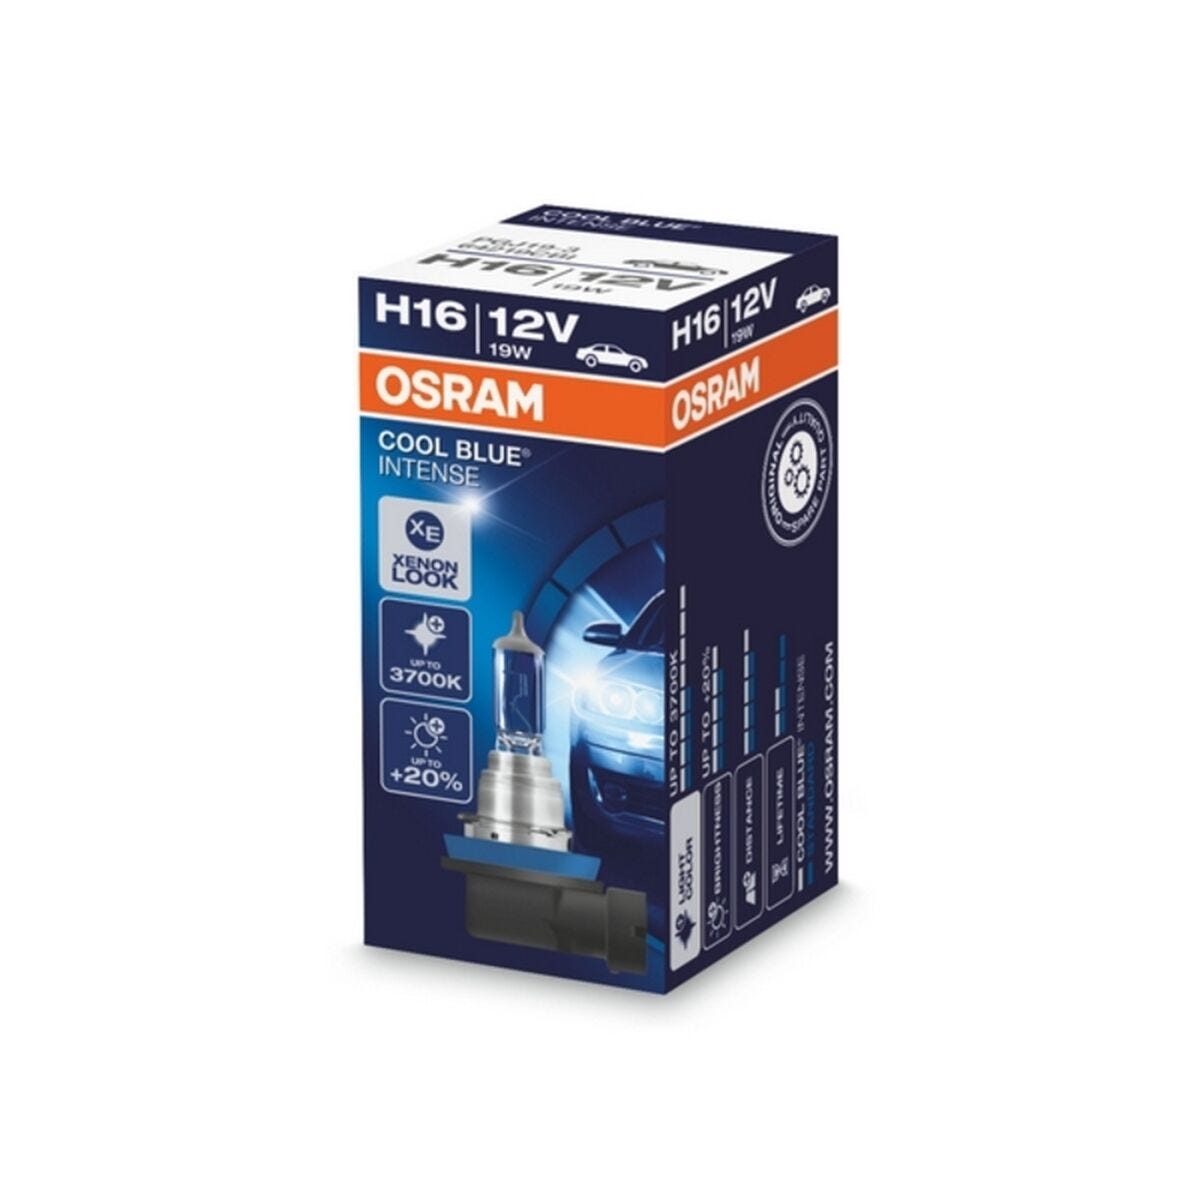 Ampoule pour voiture OS64219CBI-HCB Osram OS64219CBI-HCB H16 12V 19W 3700K (2 Pièces) 1